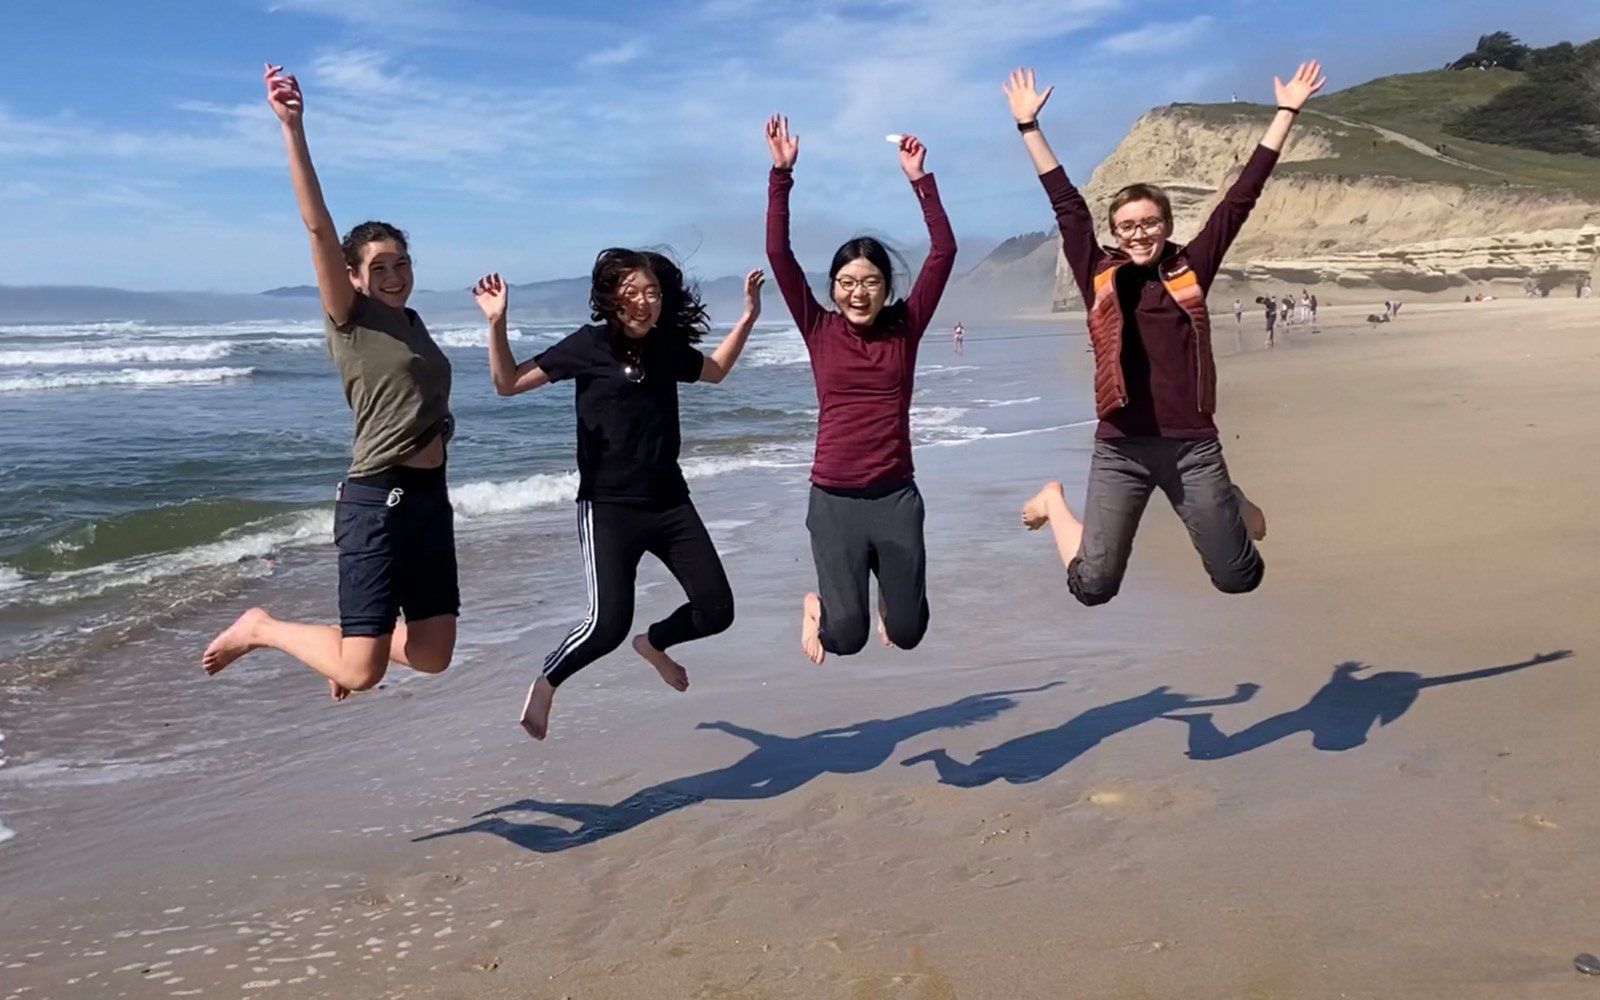 Students jumping at beach